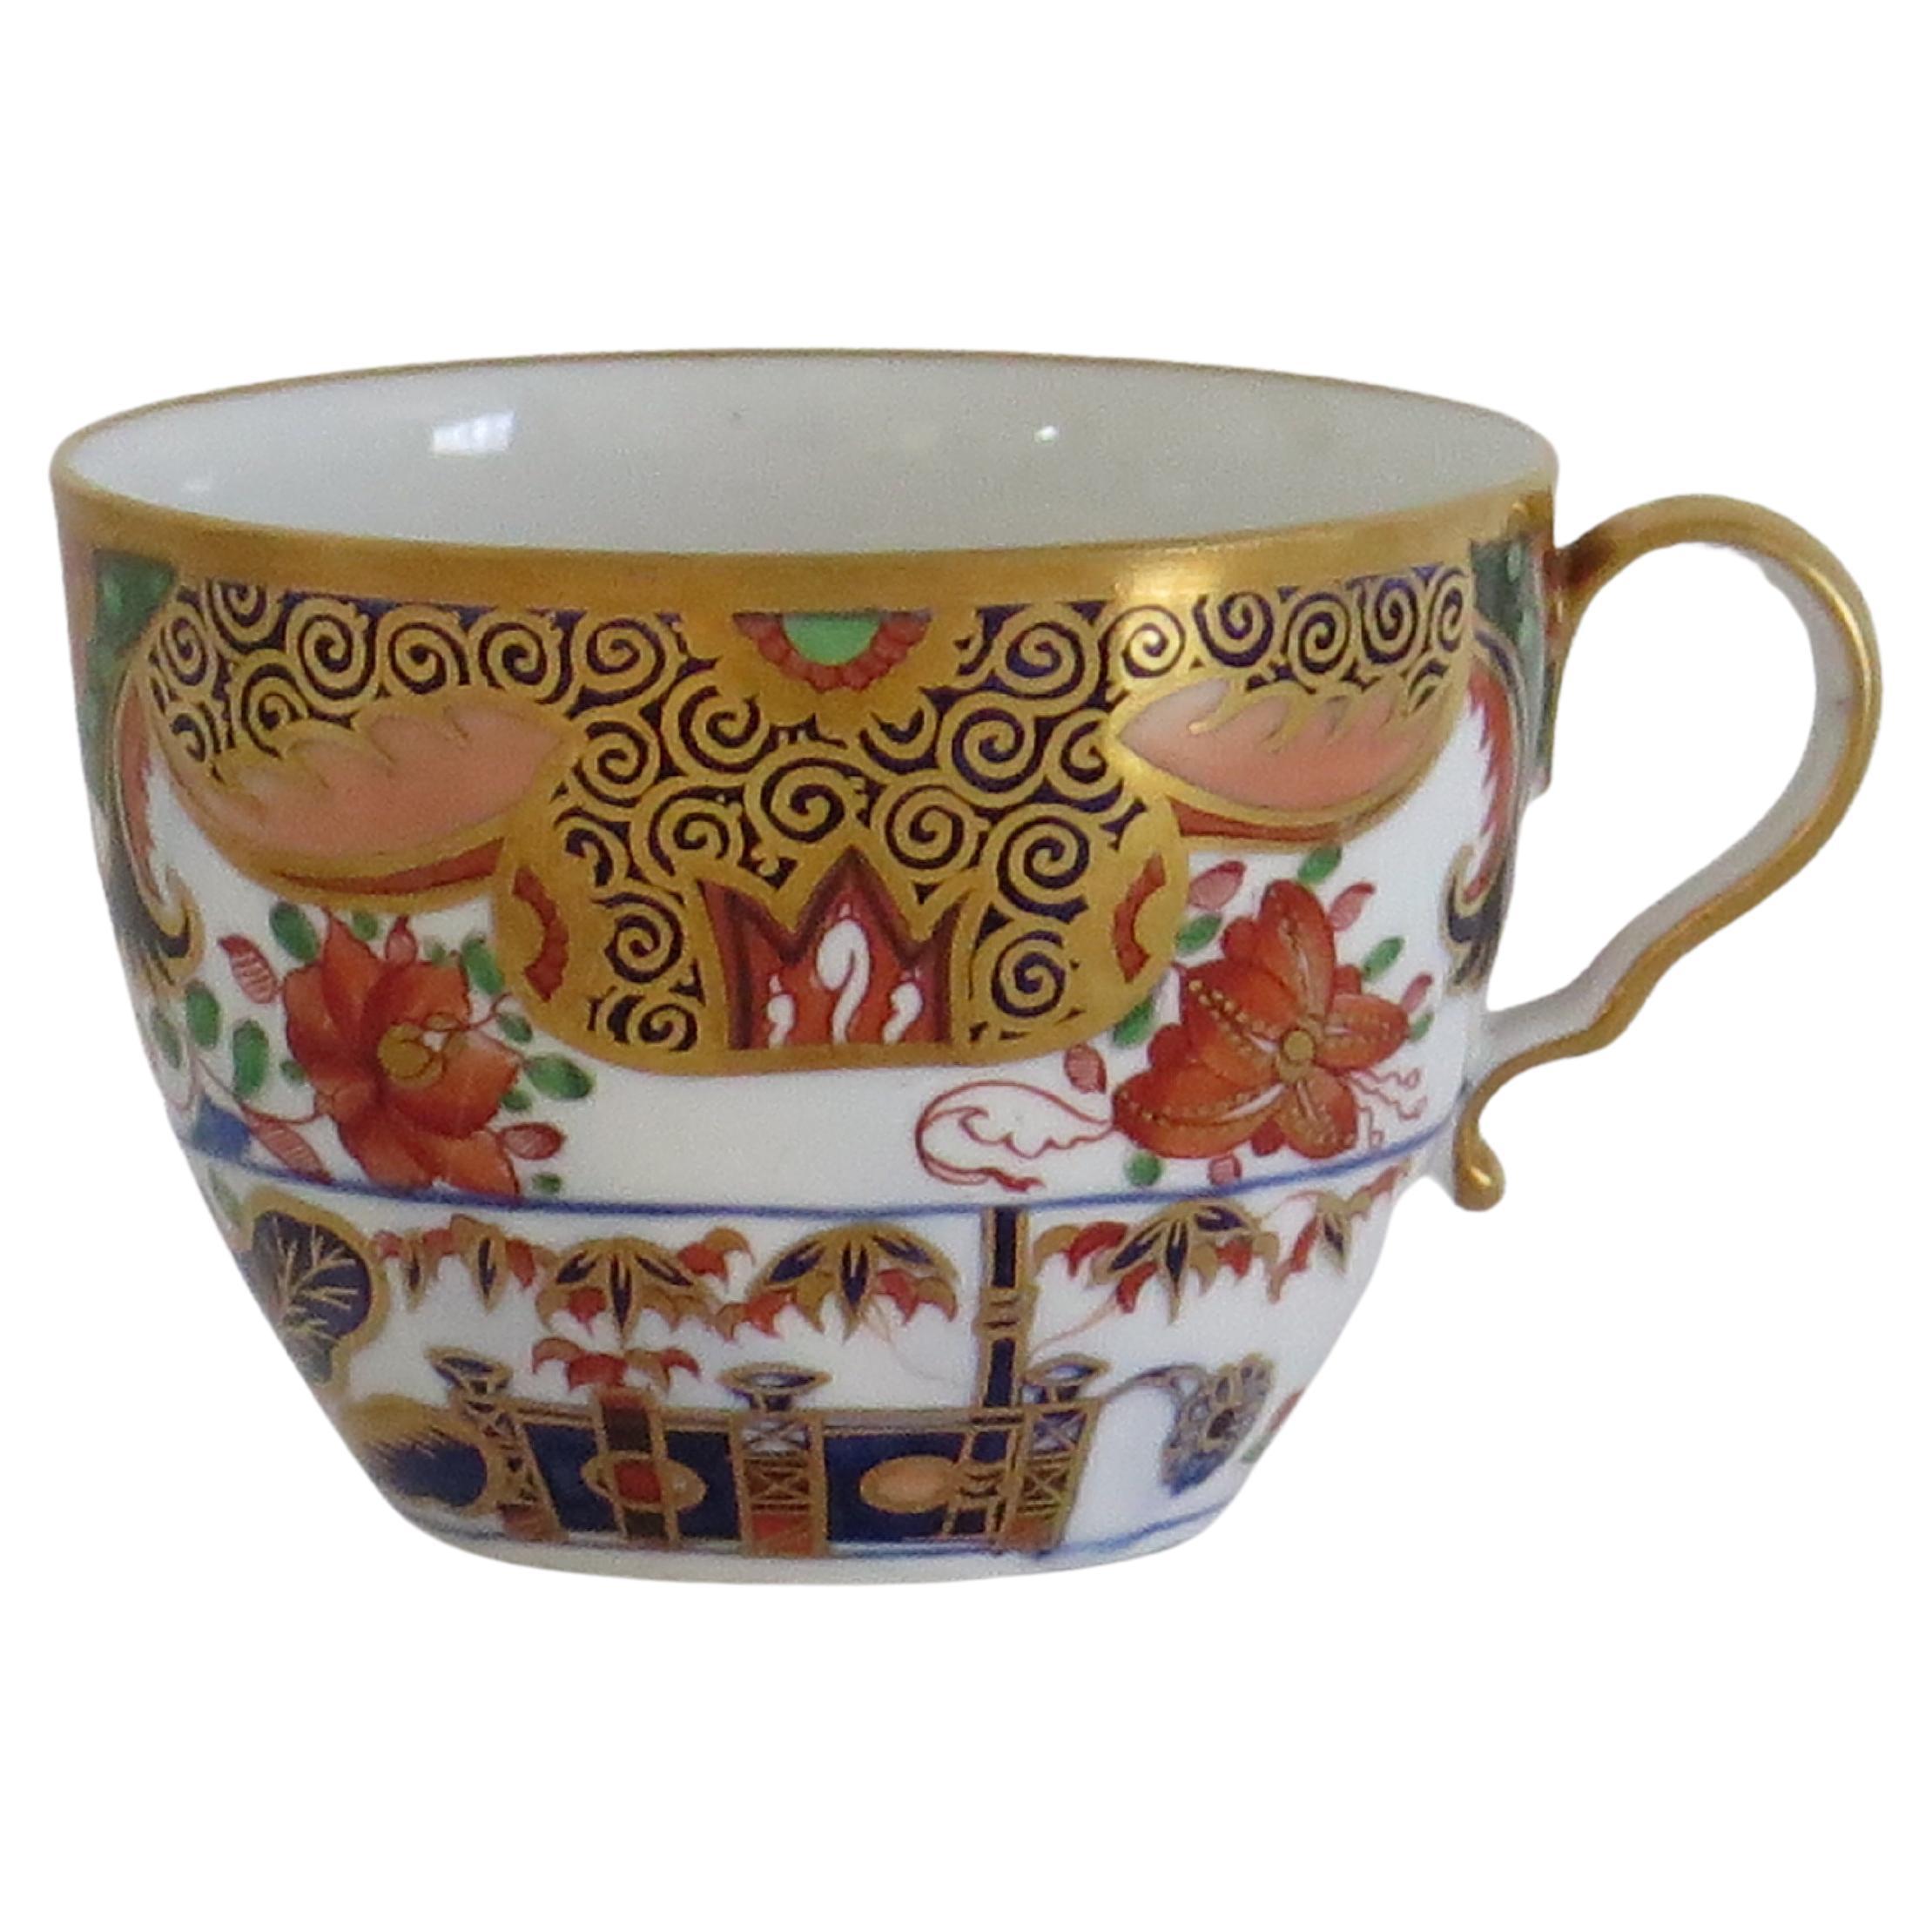 Il s'agit d'un bel exemple de tasse à thé en porcelaine anglaise d'époque George III, fabriquée par Spode et peinte à la main selon le motif 967, au début du XIXe siècle, vers 1815.

La tasse a l'anse en boucle de Spode avec un coup de pied prononcé